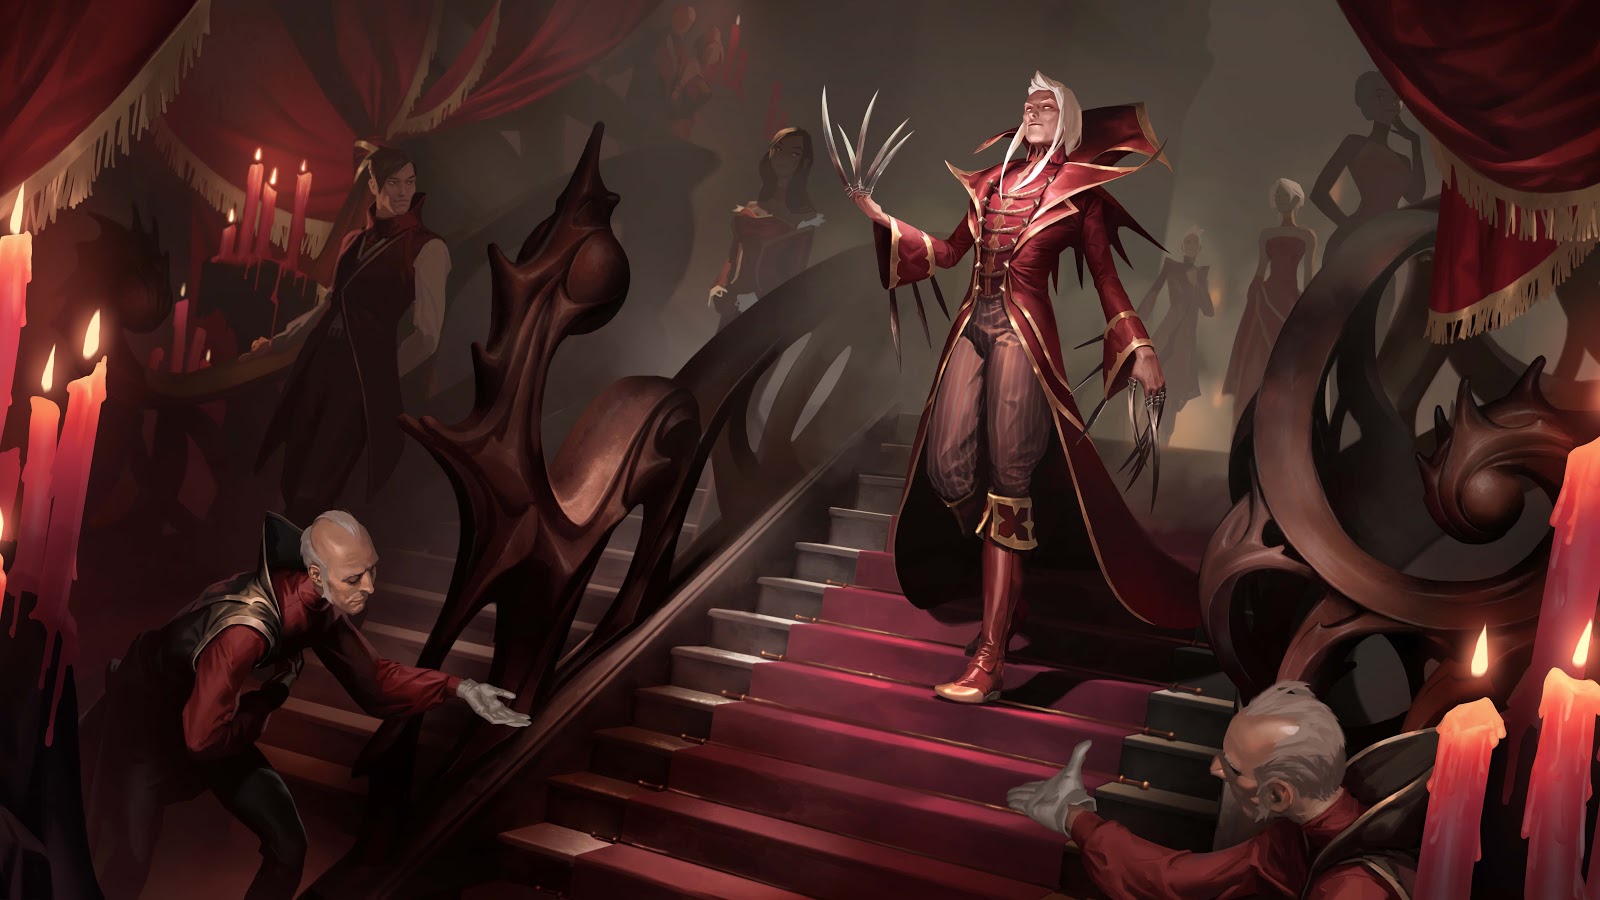 Vladamir schodzi po schodach, a jego słudzy biją przed nim pokłony.